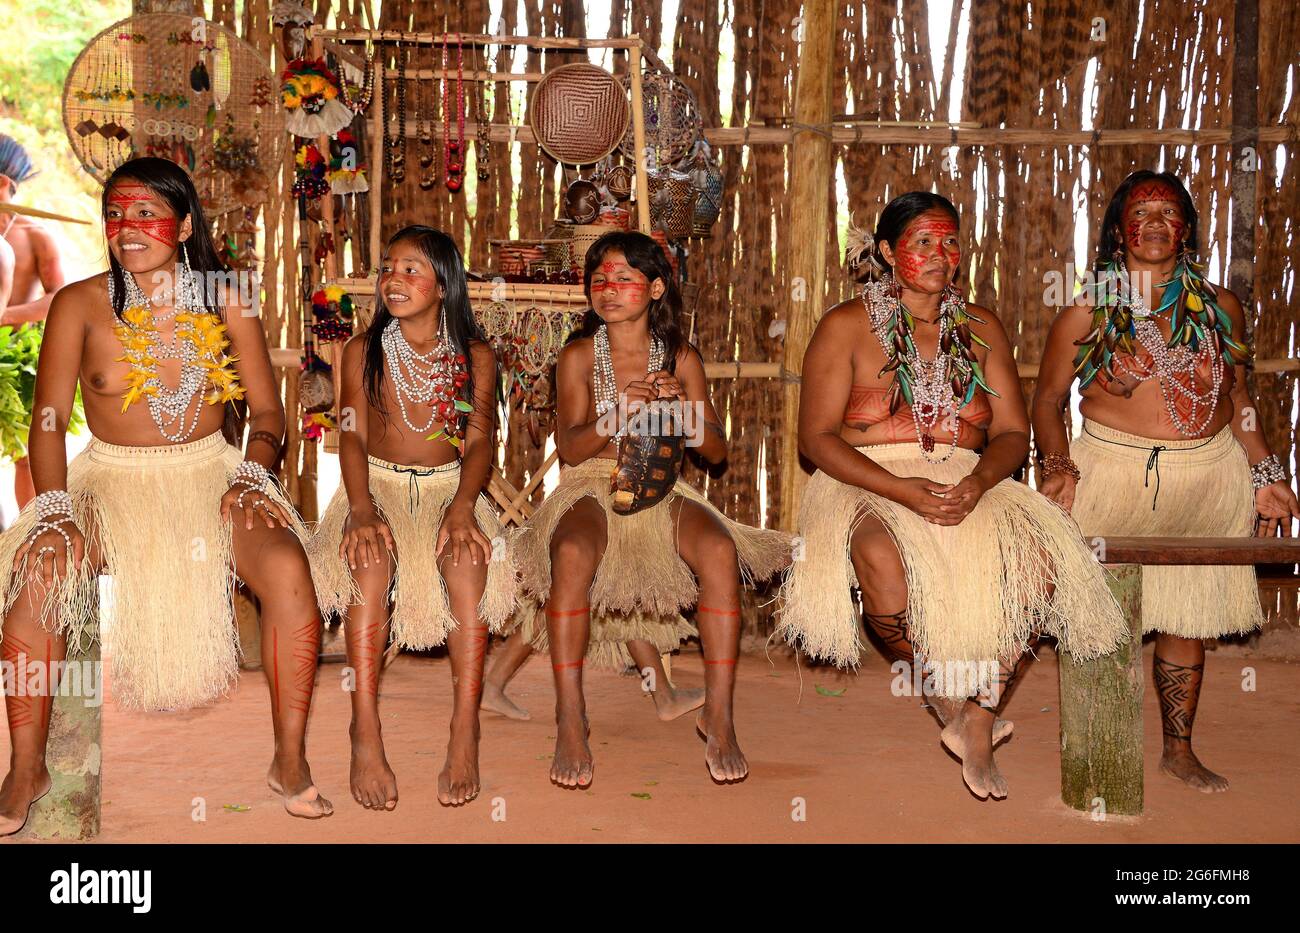 Tatuyo village near Manaus. Girls and women inside hut. Brazil. Stock Photo